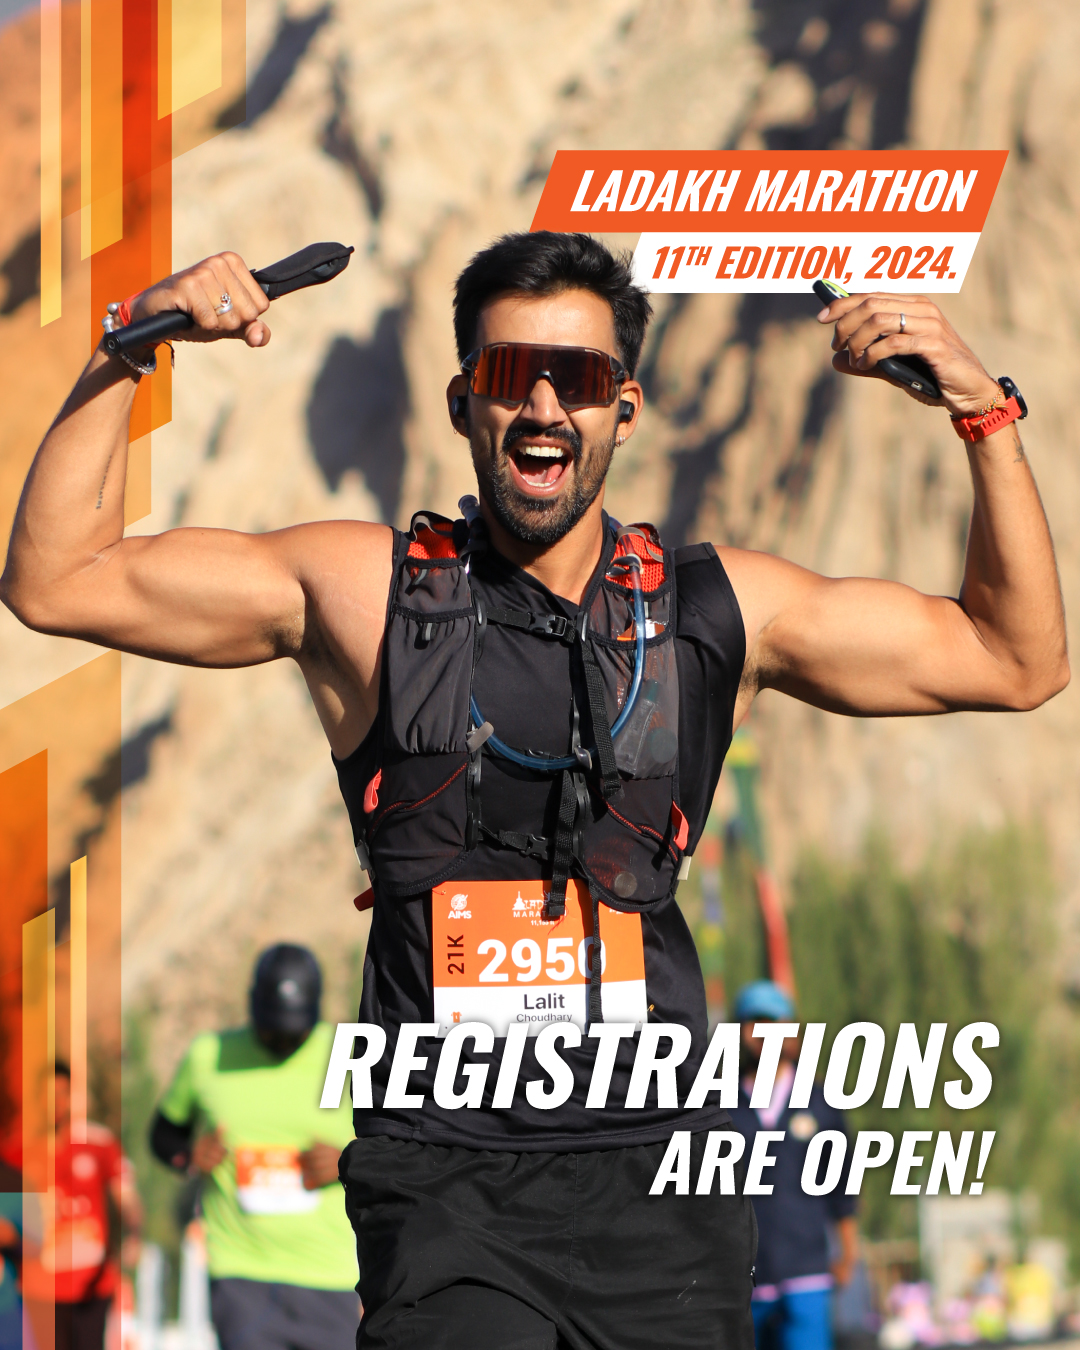 Ladakh Marathon 2024